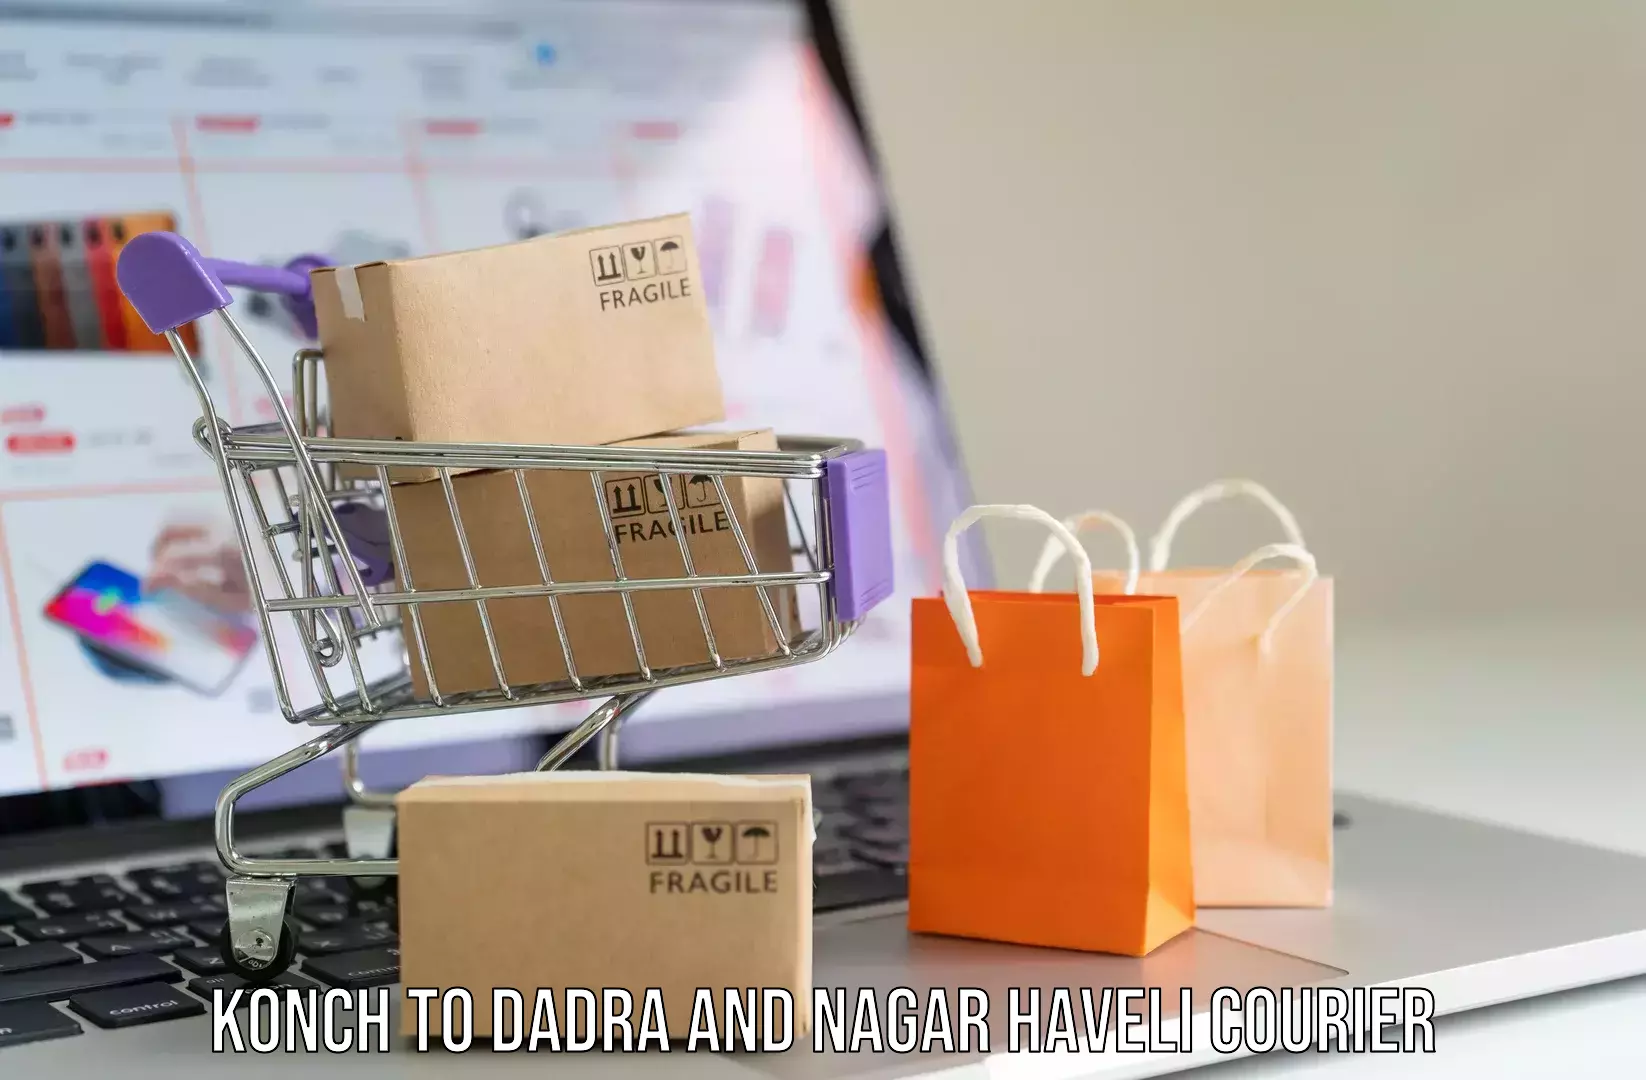 Luggage shipment tracking Konch to Dadra and Nagar Haveli